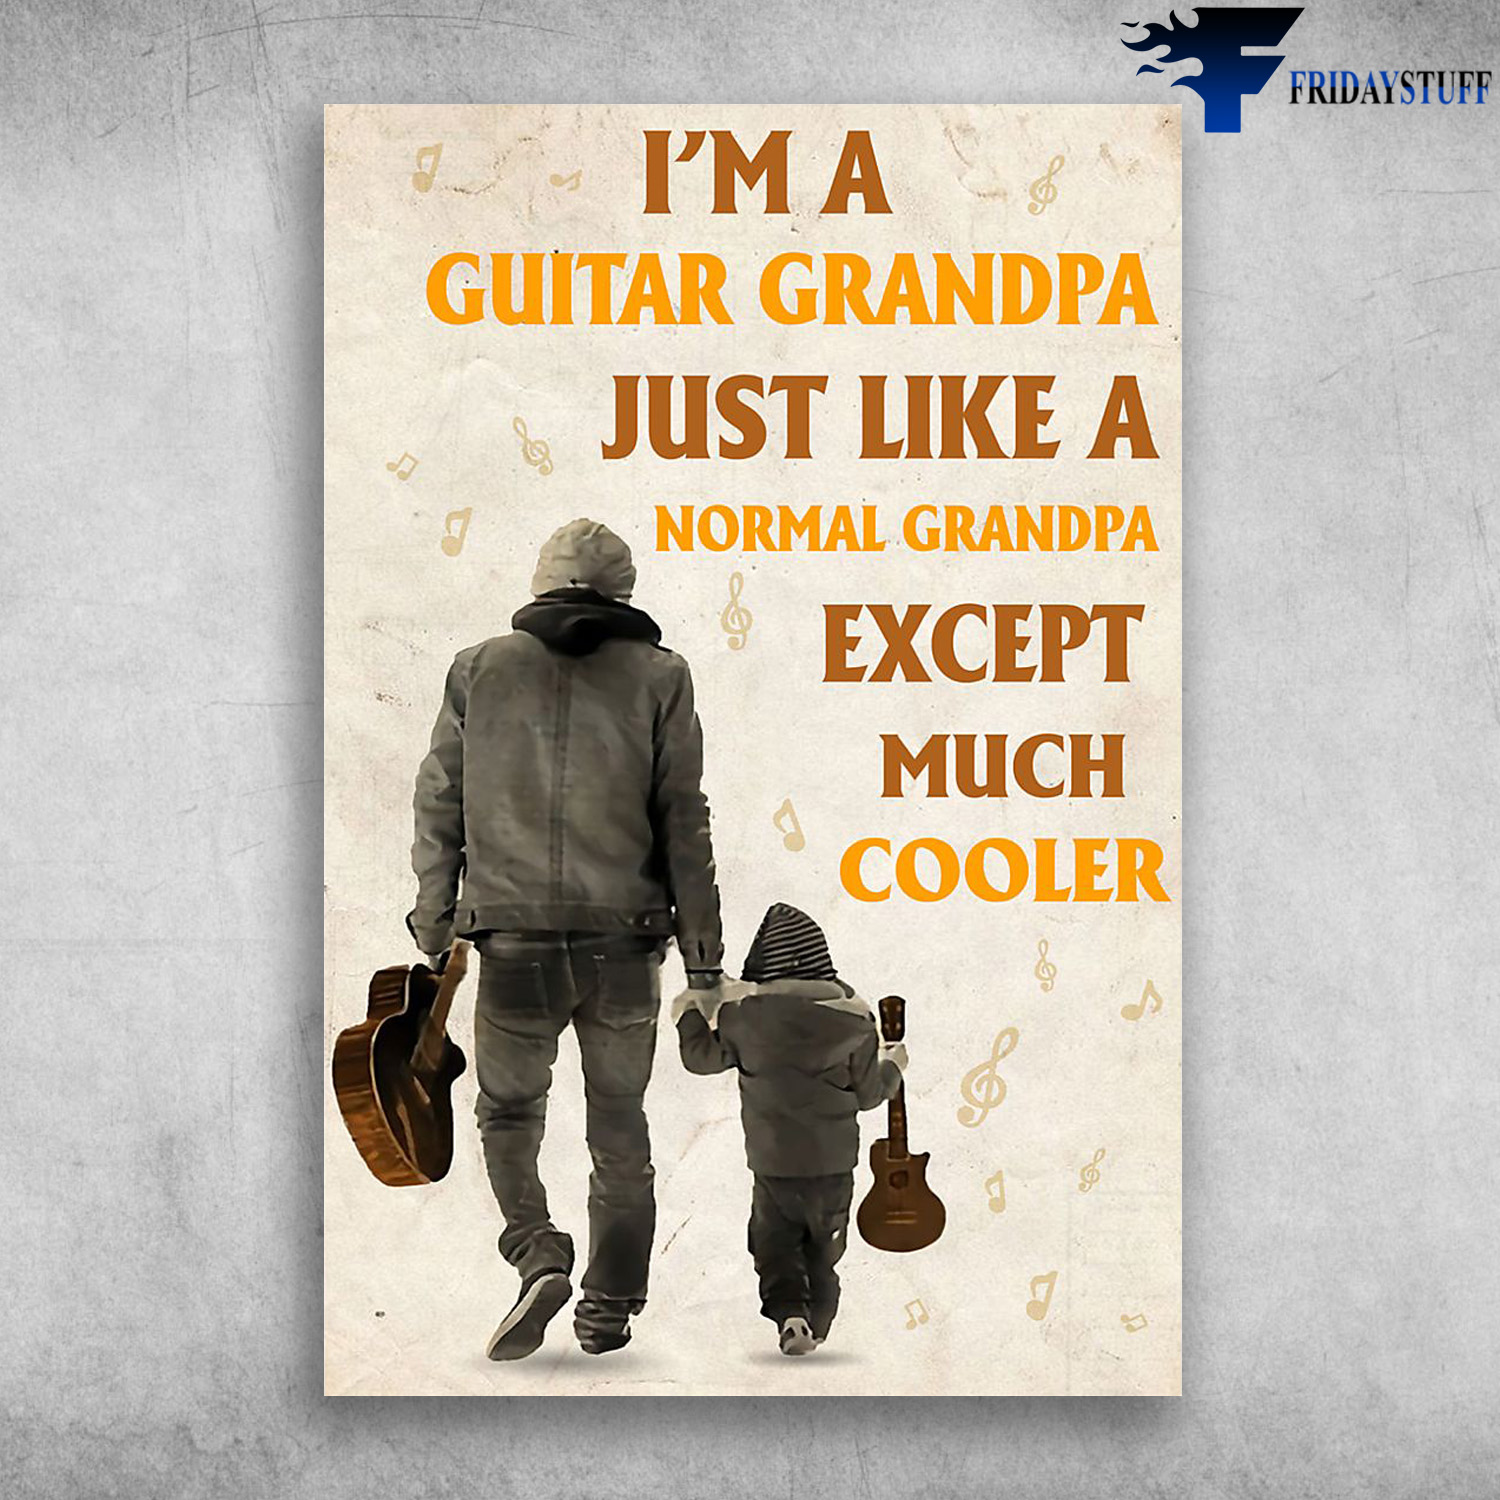 Grandpa And Grandchildren Guitar - I'm A Guitar Grandpa, Just Like A Normal Grandpa Except Much Cooler